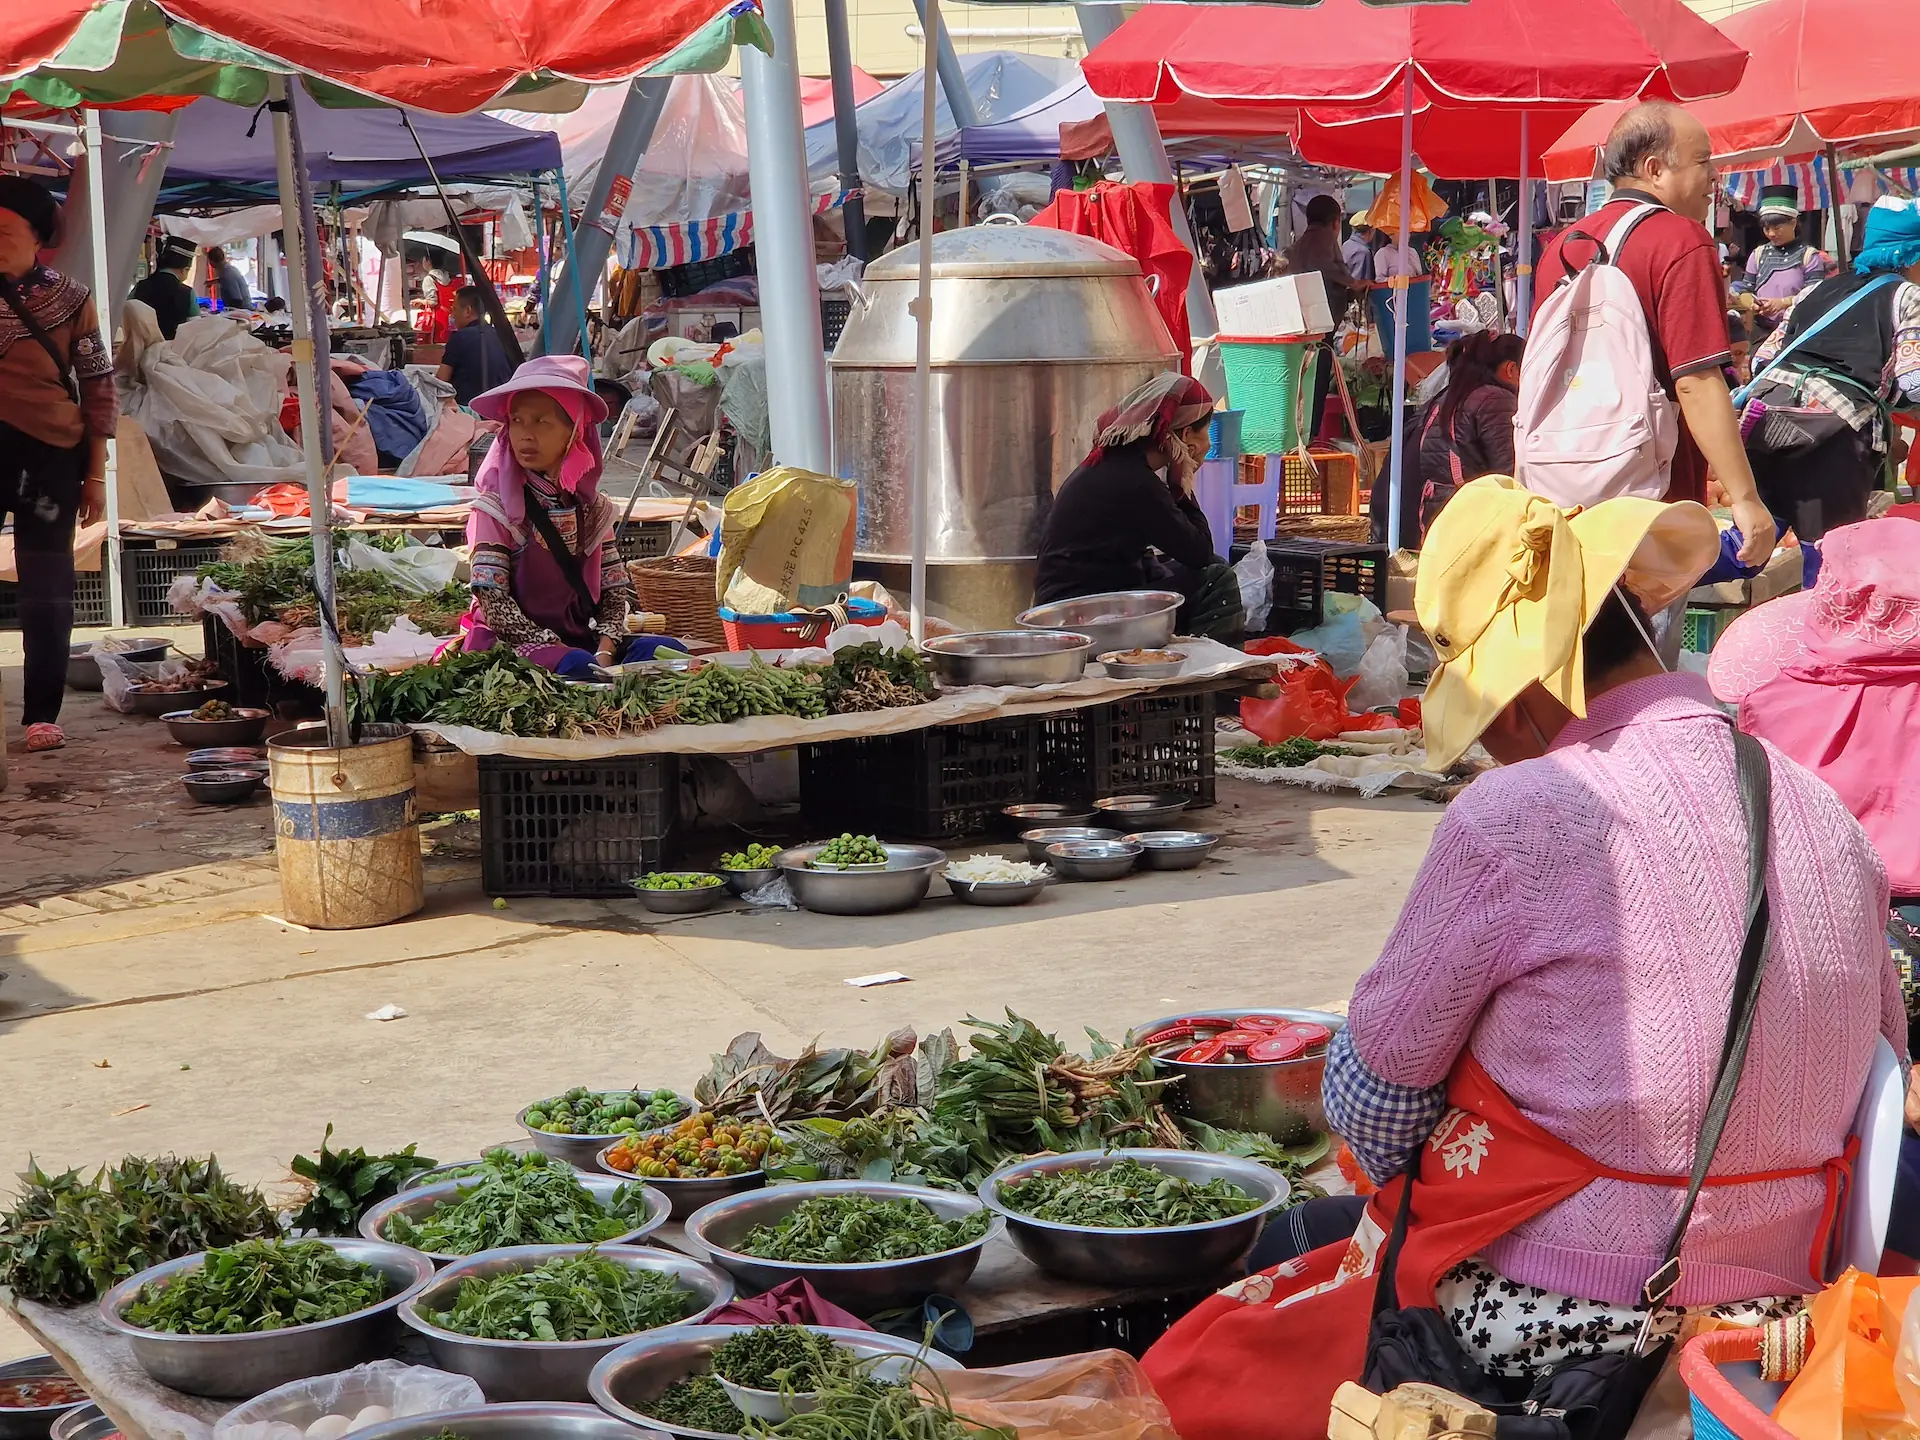 Scène de marché : les stands de vendeuses d'herbes en tous genres se font face, des gens passent en regardant les marchandises.